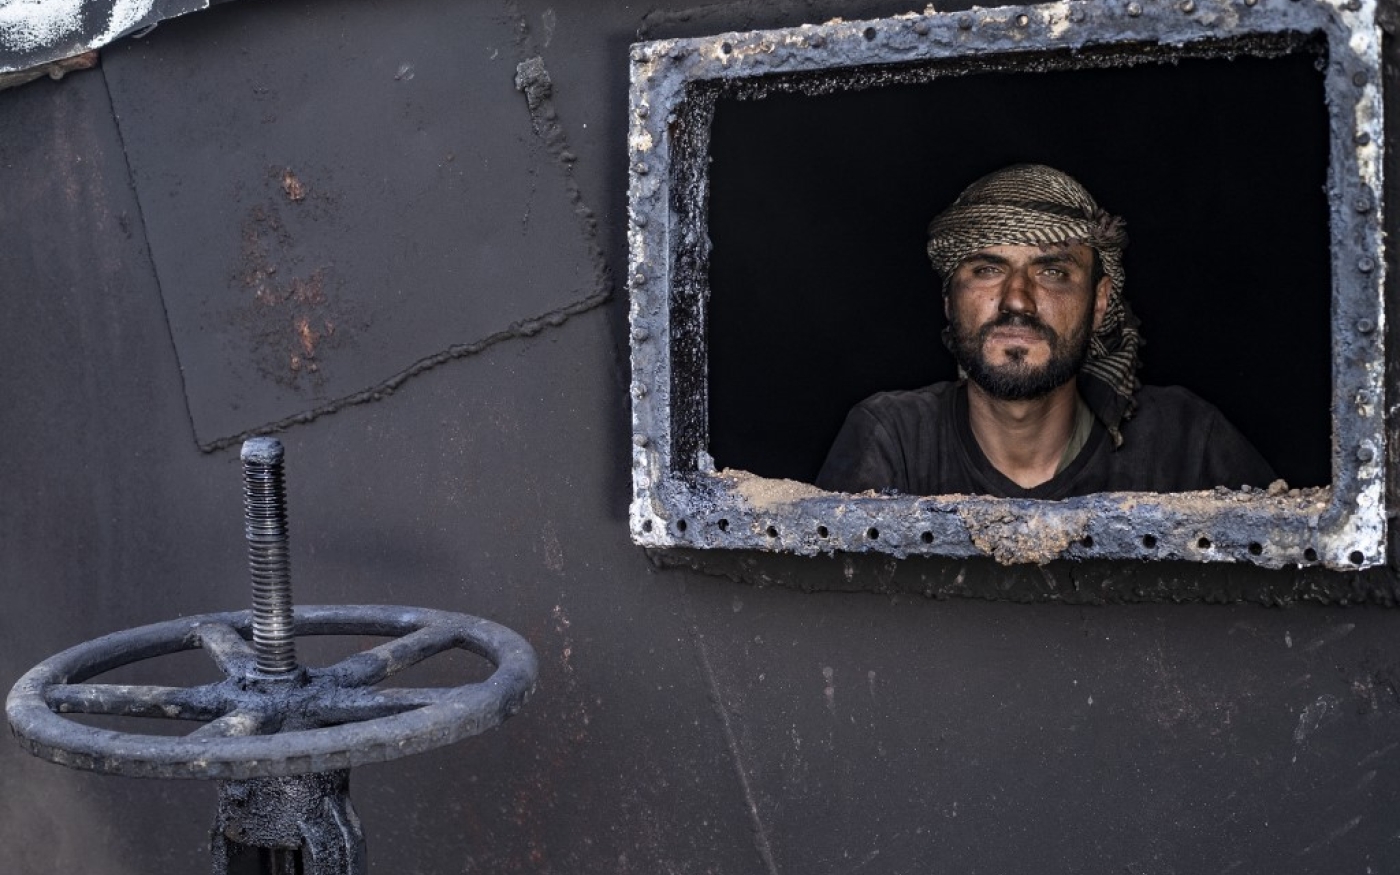 Un employé d’une raffinerie de fortune, dans la province de Hassaké, dans le nord-est de la Syrie sous contrôle kurde (AFP/Delil Souleiman)